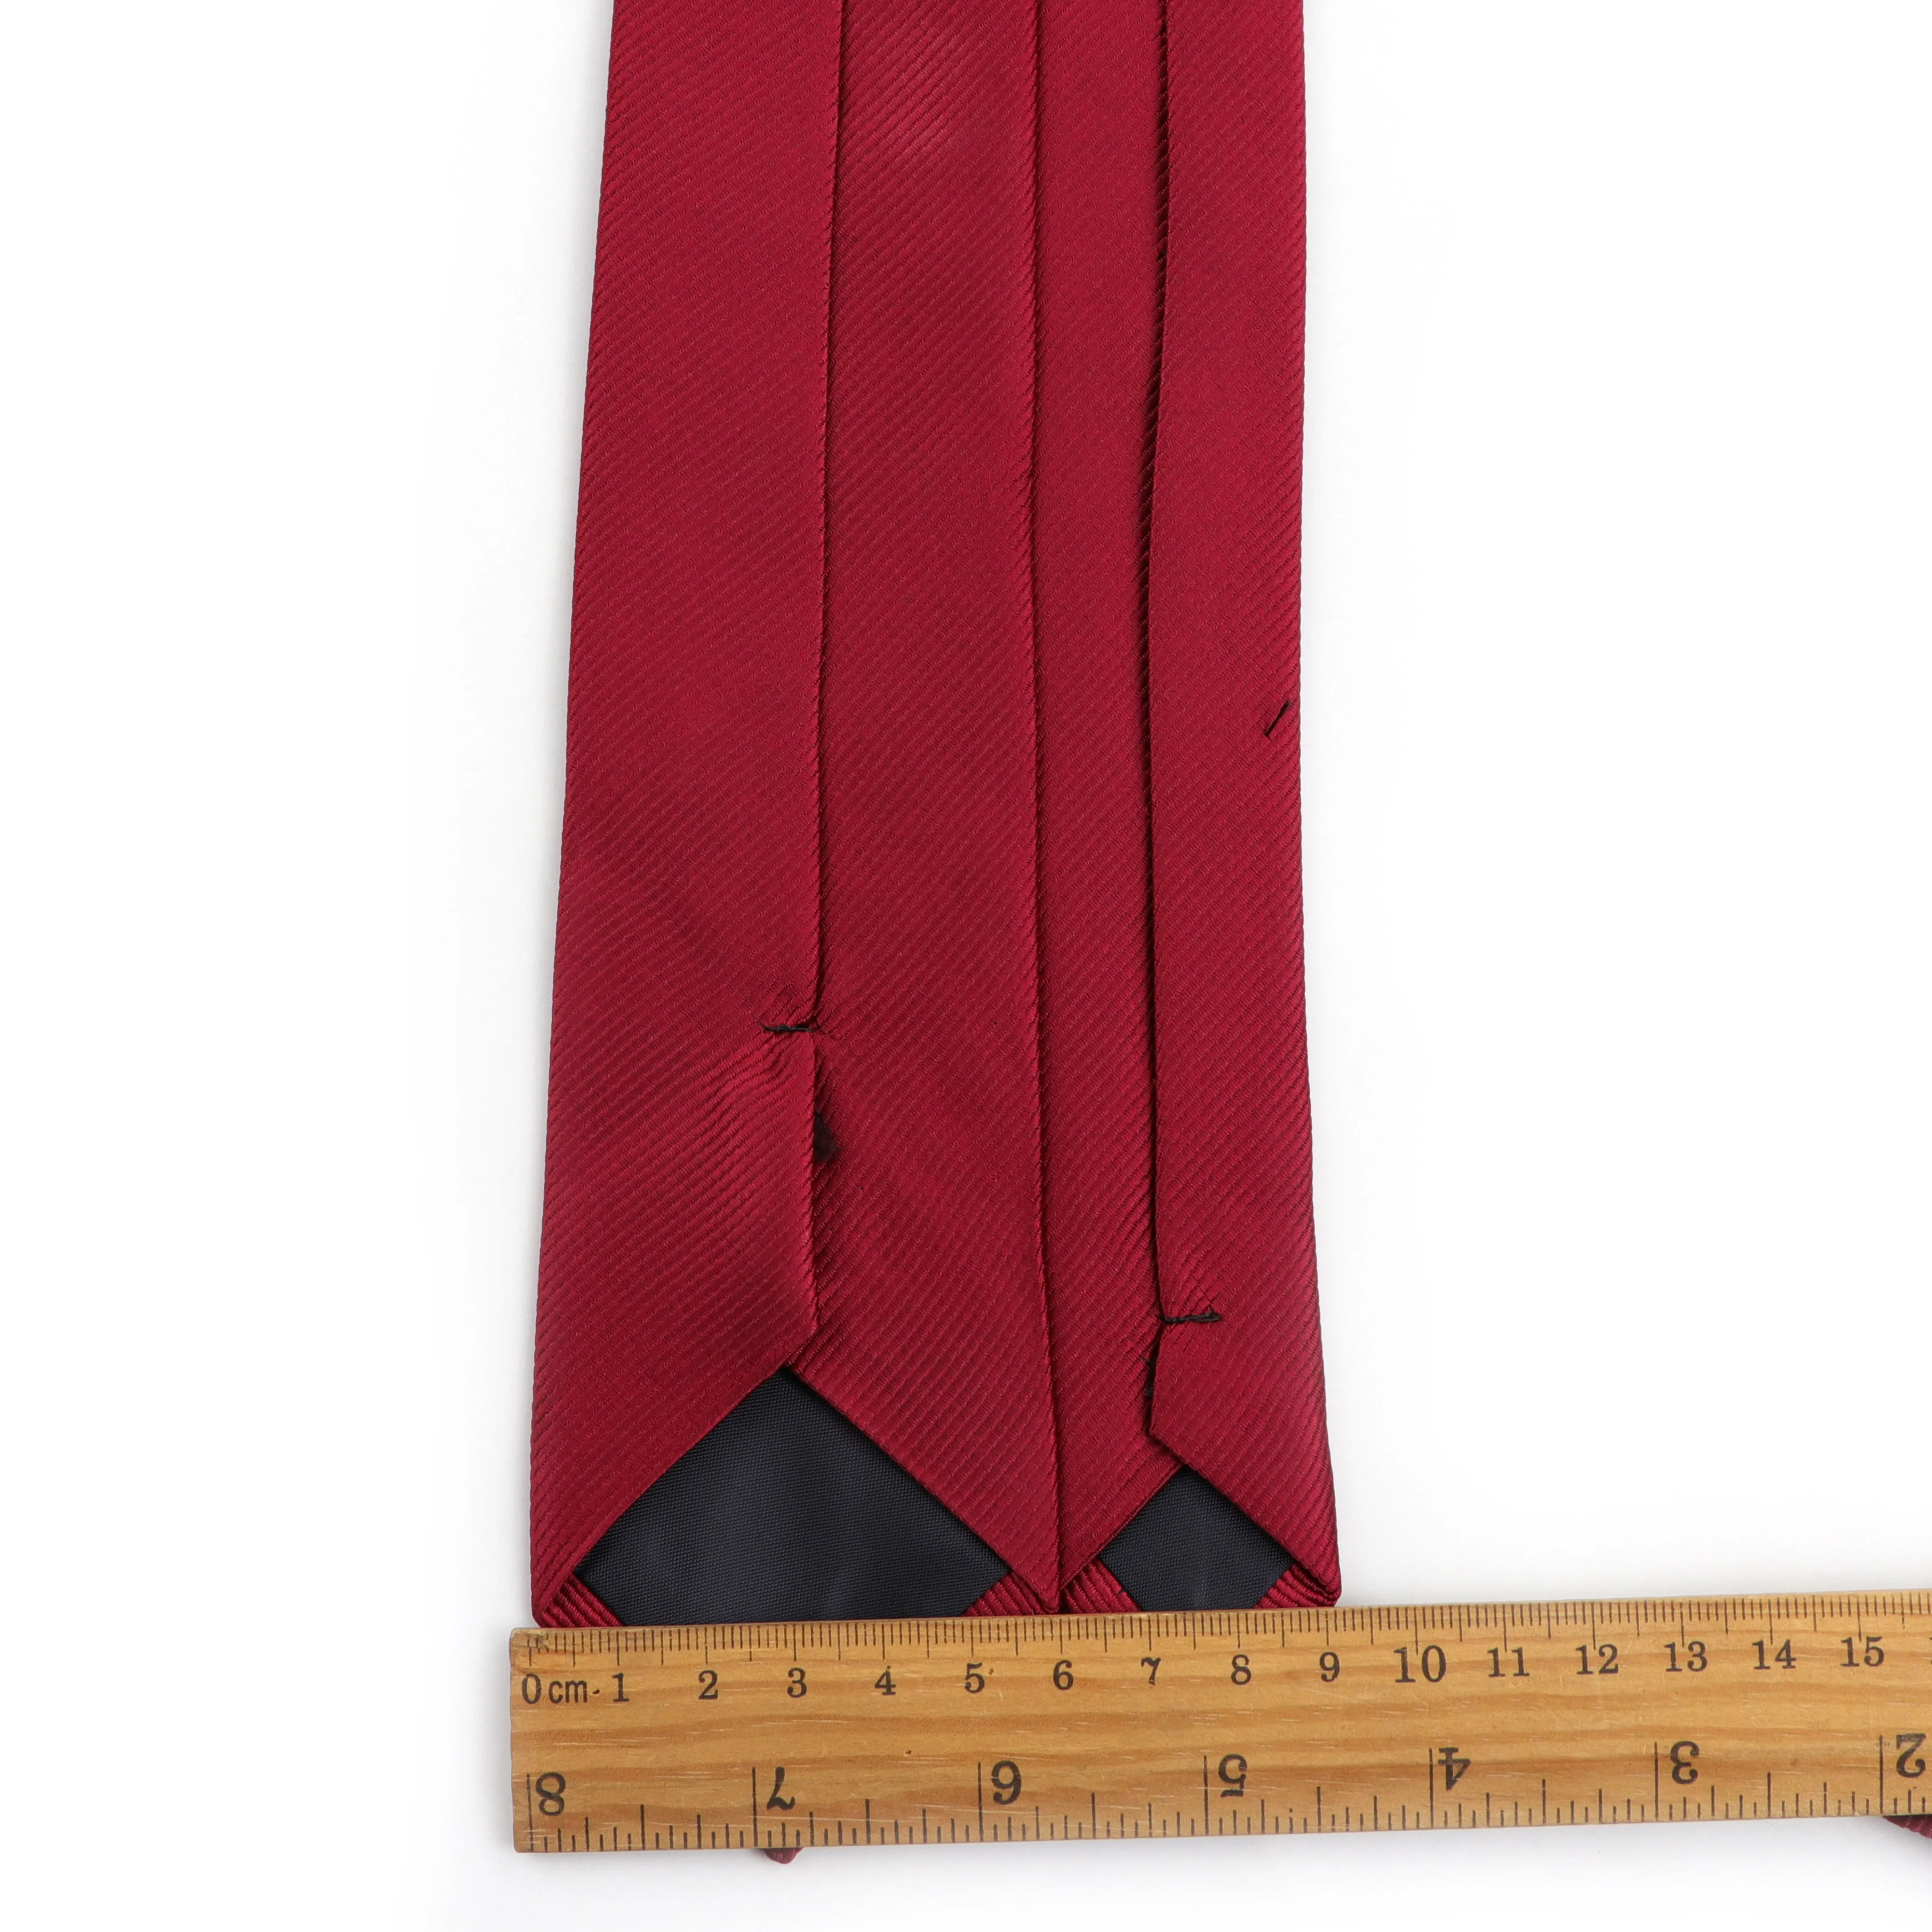 Горячая Мода Твердый набор галстуков мужские дизайнерские обтягивающие